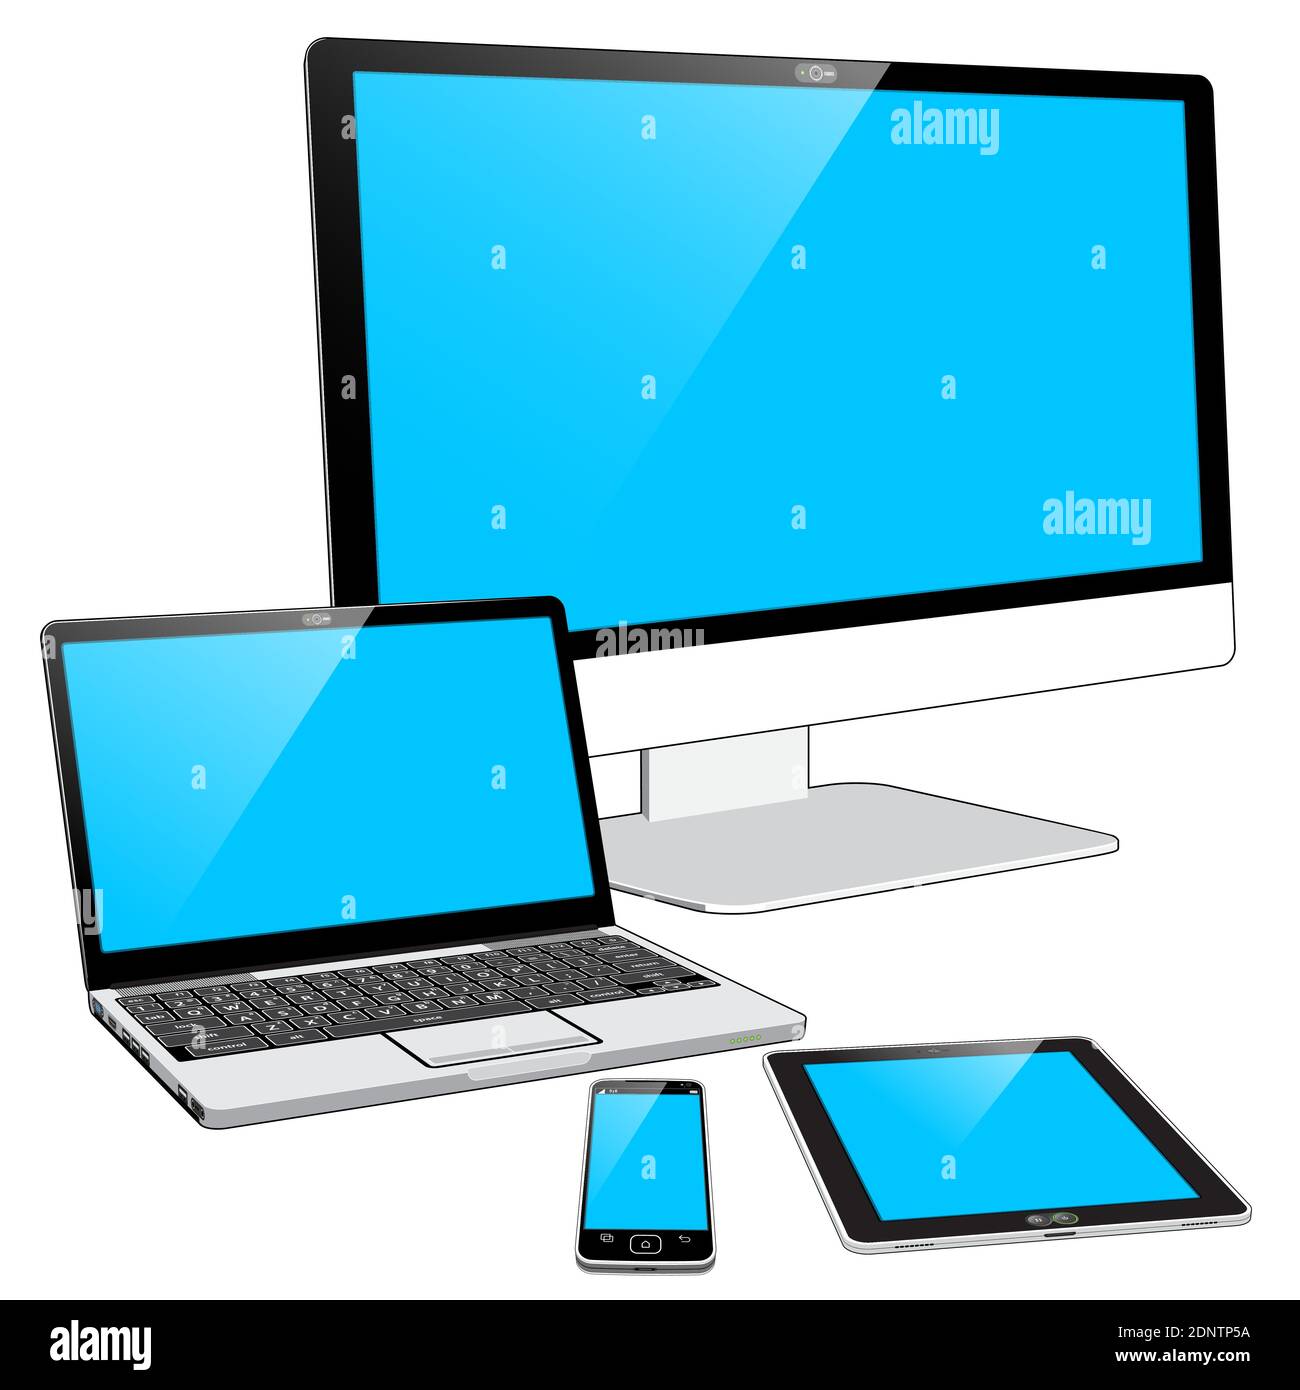 Una raccolta raggruppata di 4 dispositivi attuali: Uno smartphone, un Tablet  PC, un notebook e un PC all-in-one con ampio display Immagine e Vettoriale  - Alamy